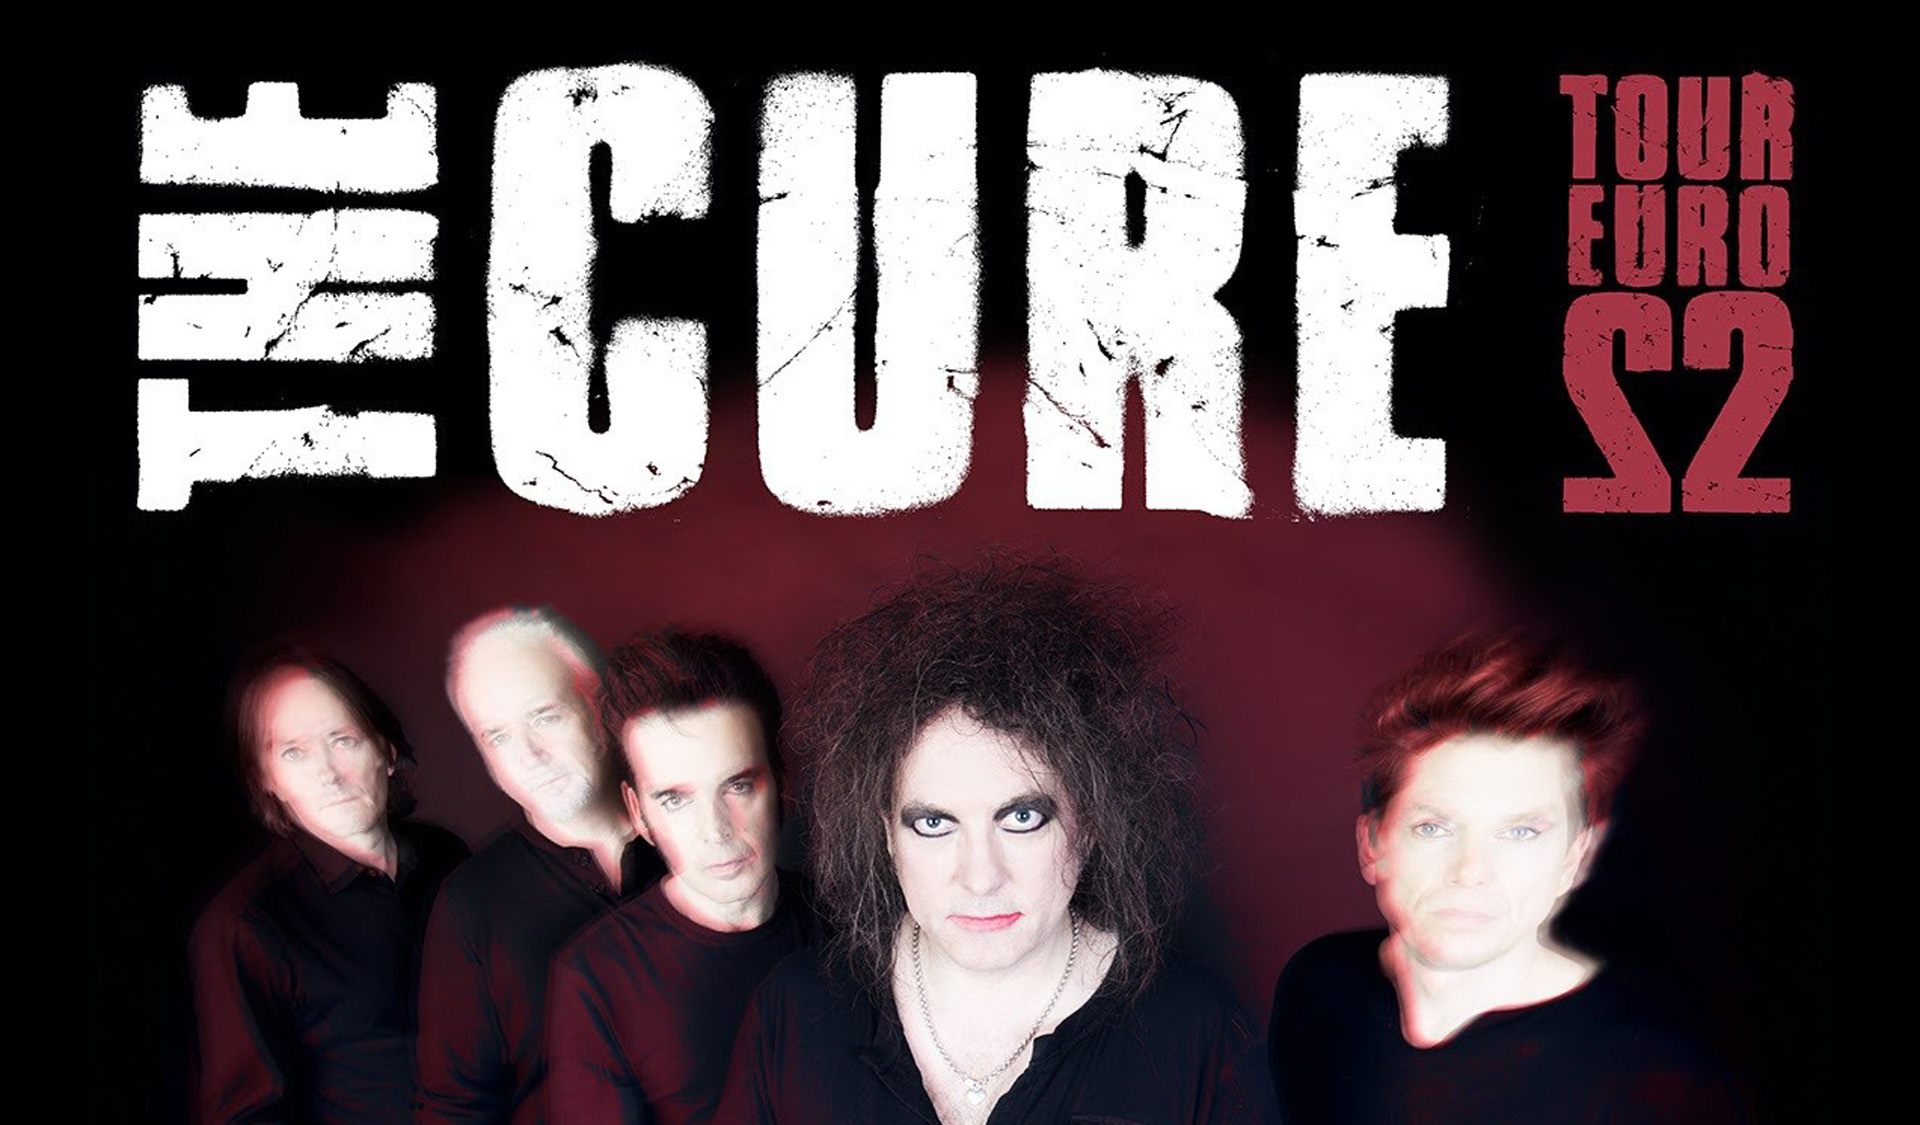 The Cure anuncia gira europea en 2022 con conciertos en Barcelona y Madrid